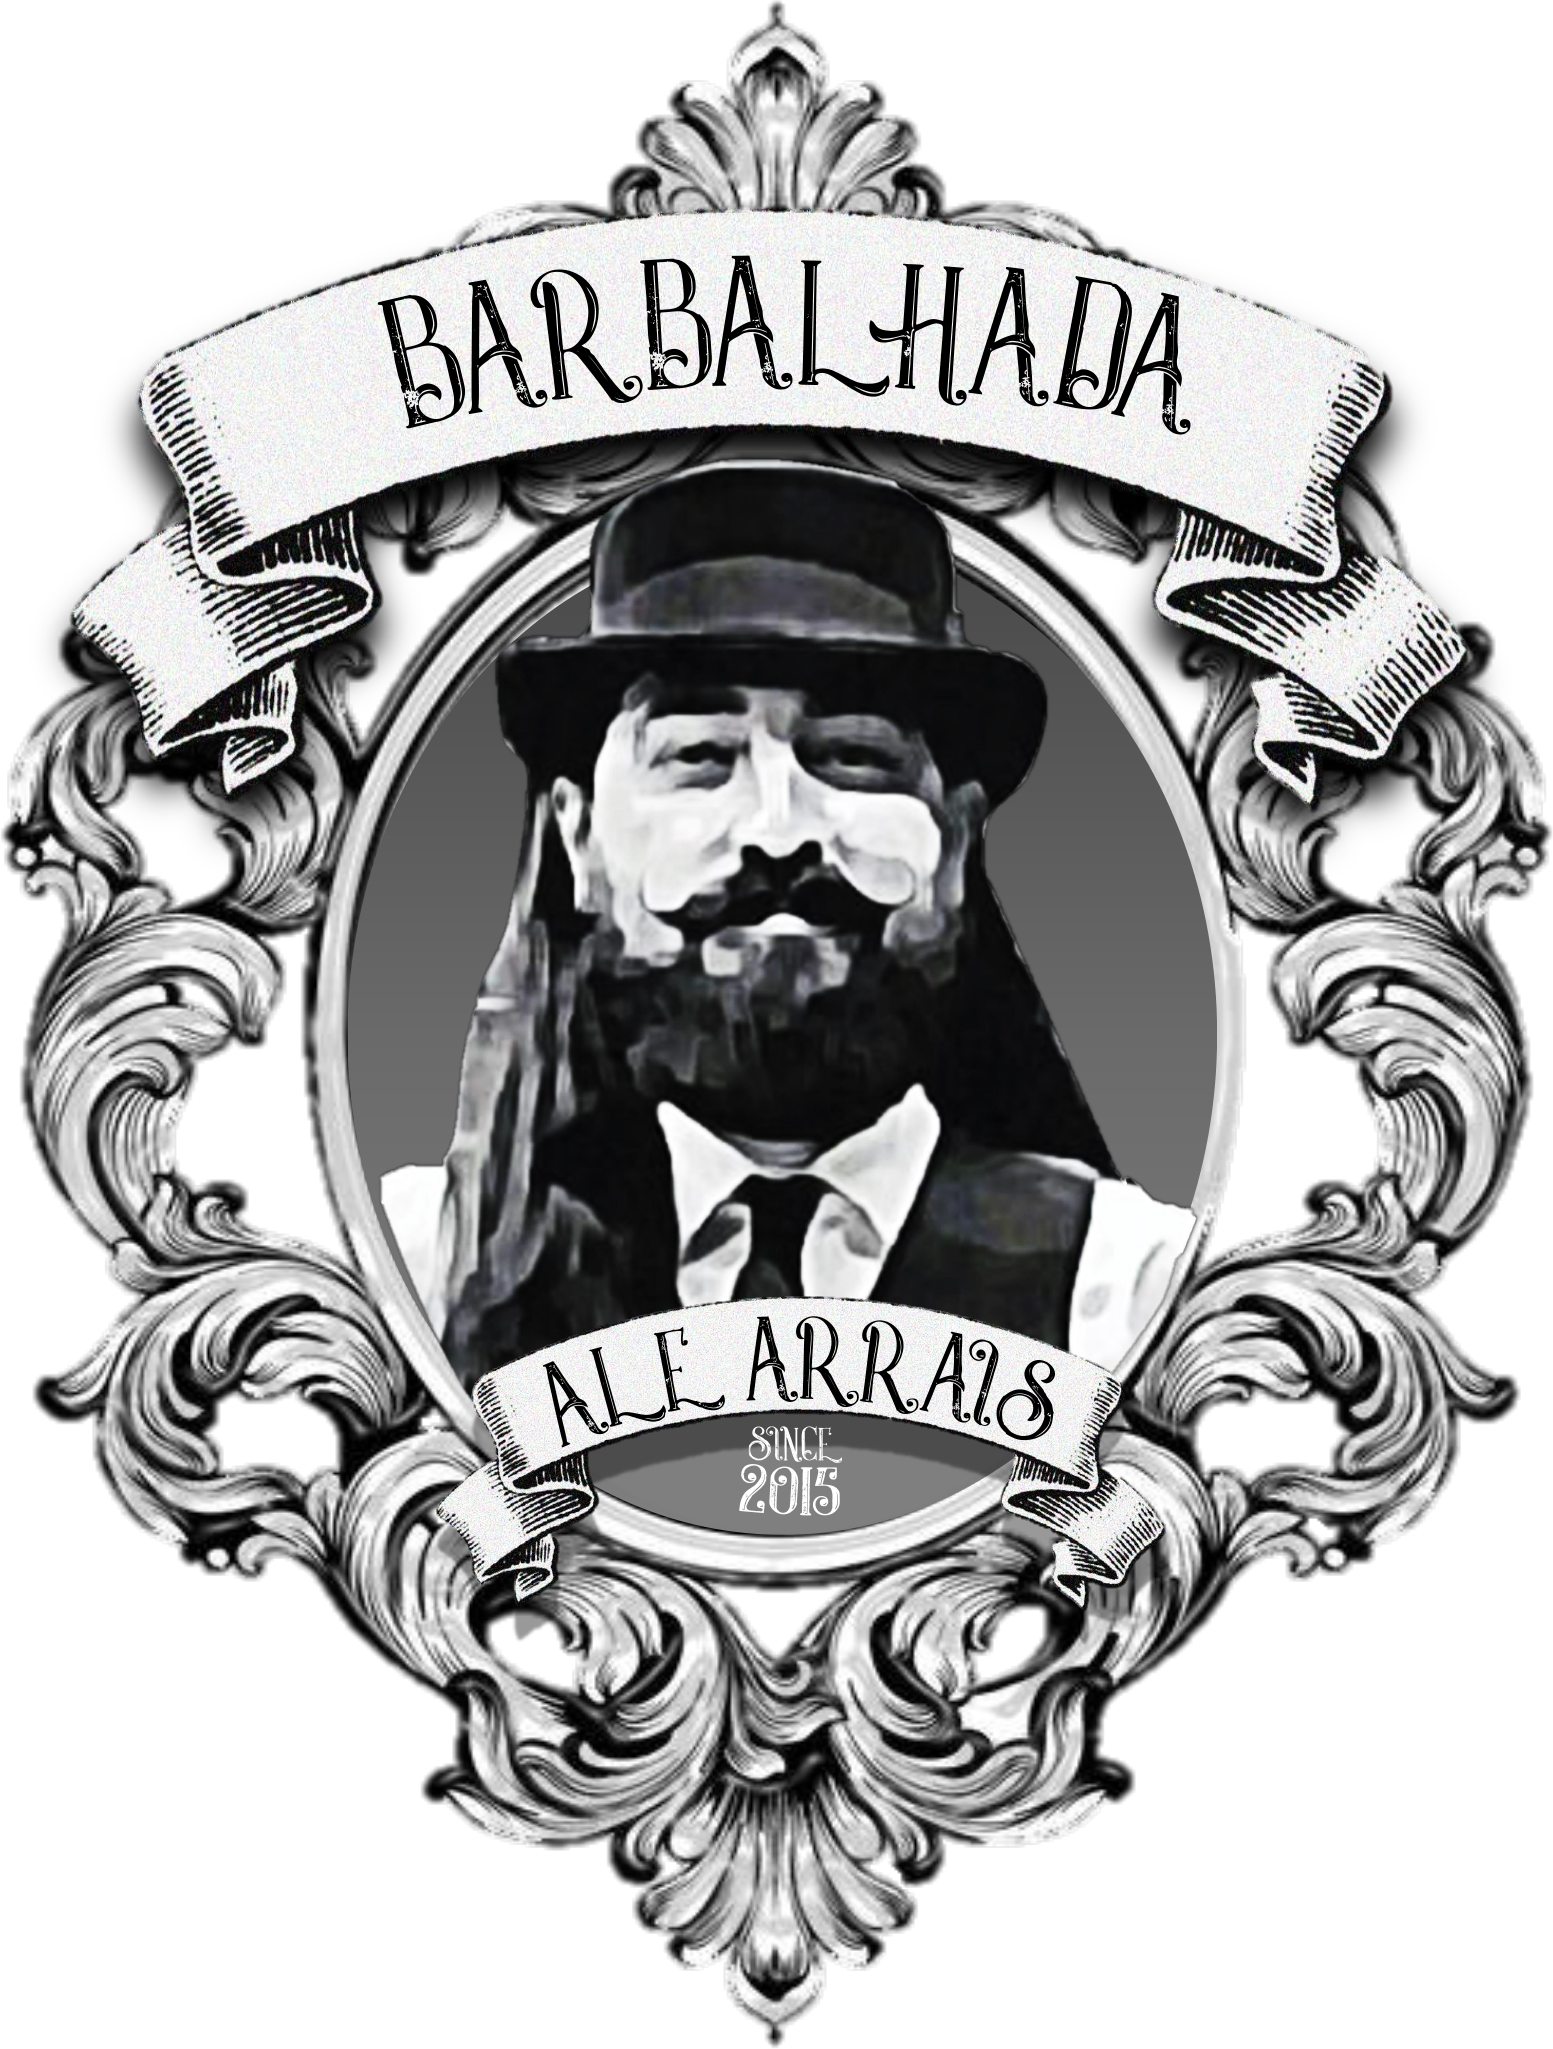 Barbearia Barbalhada